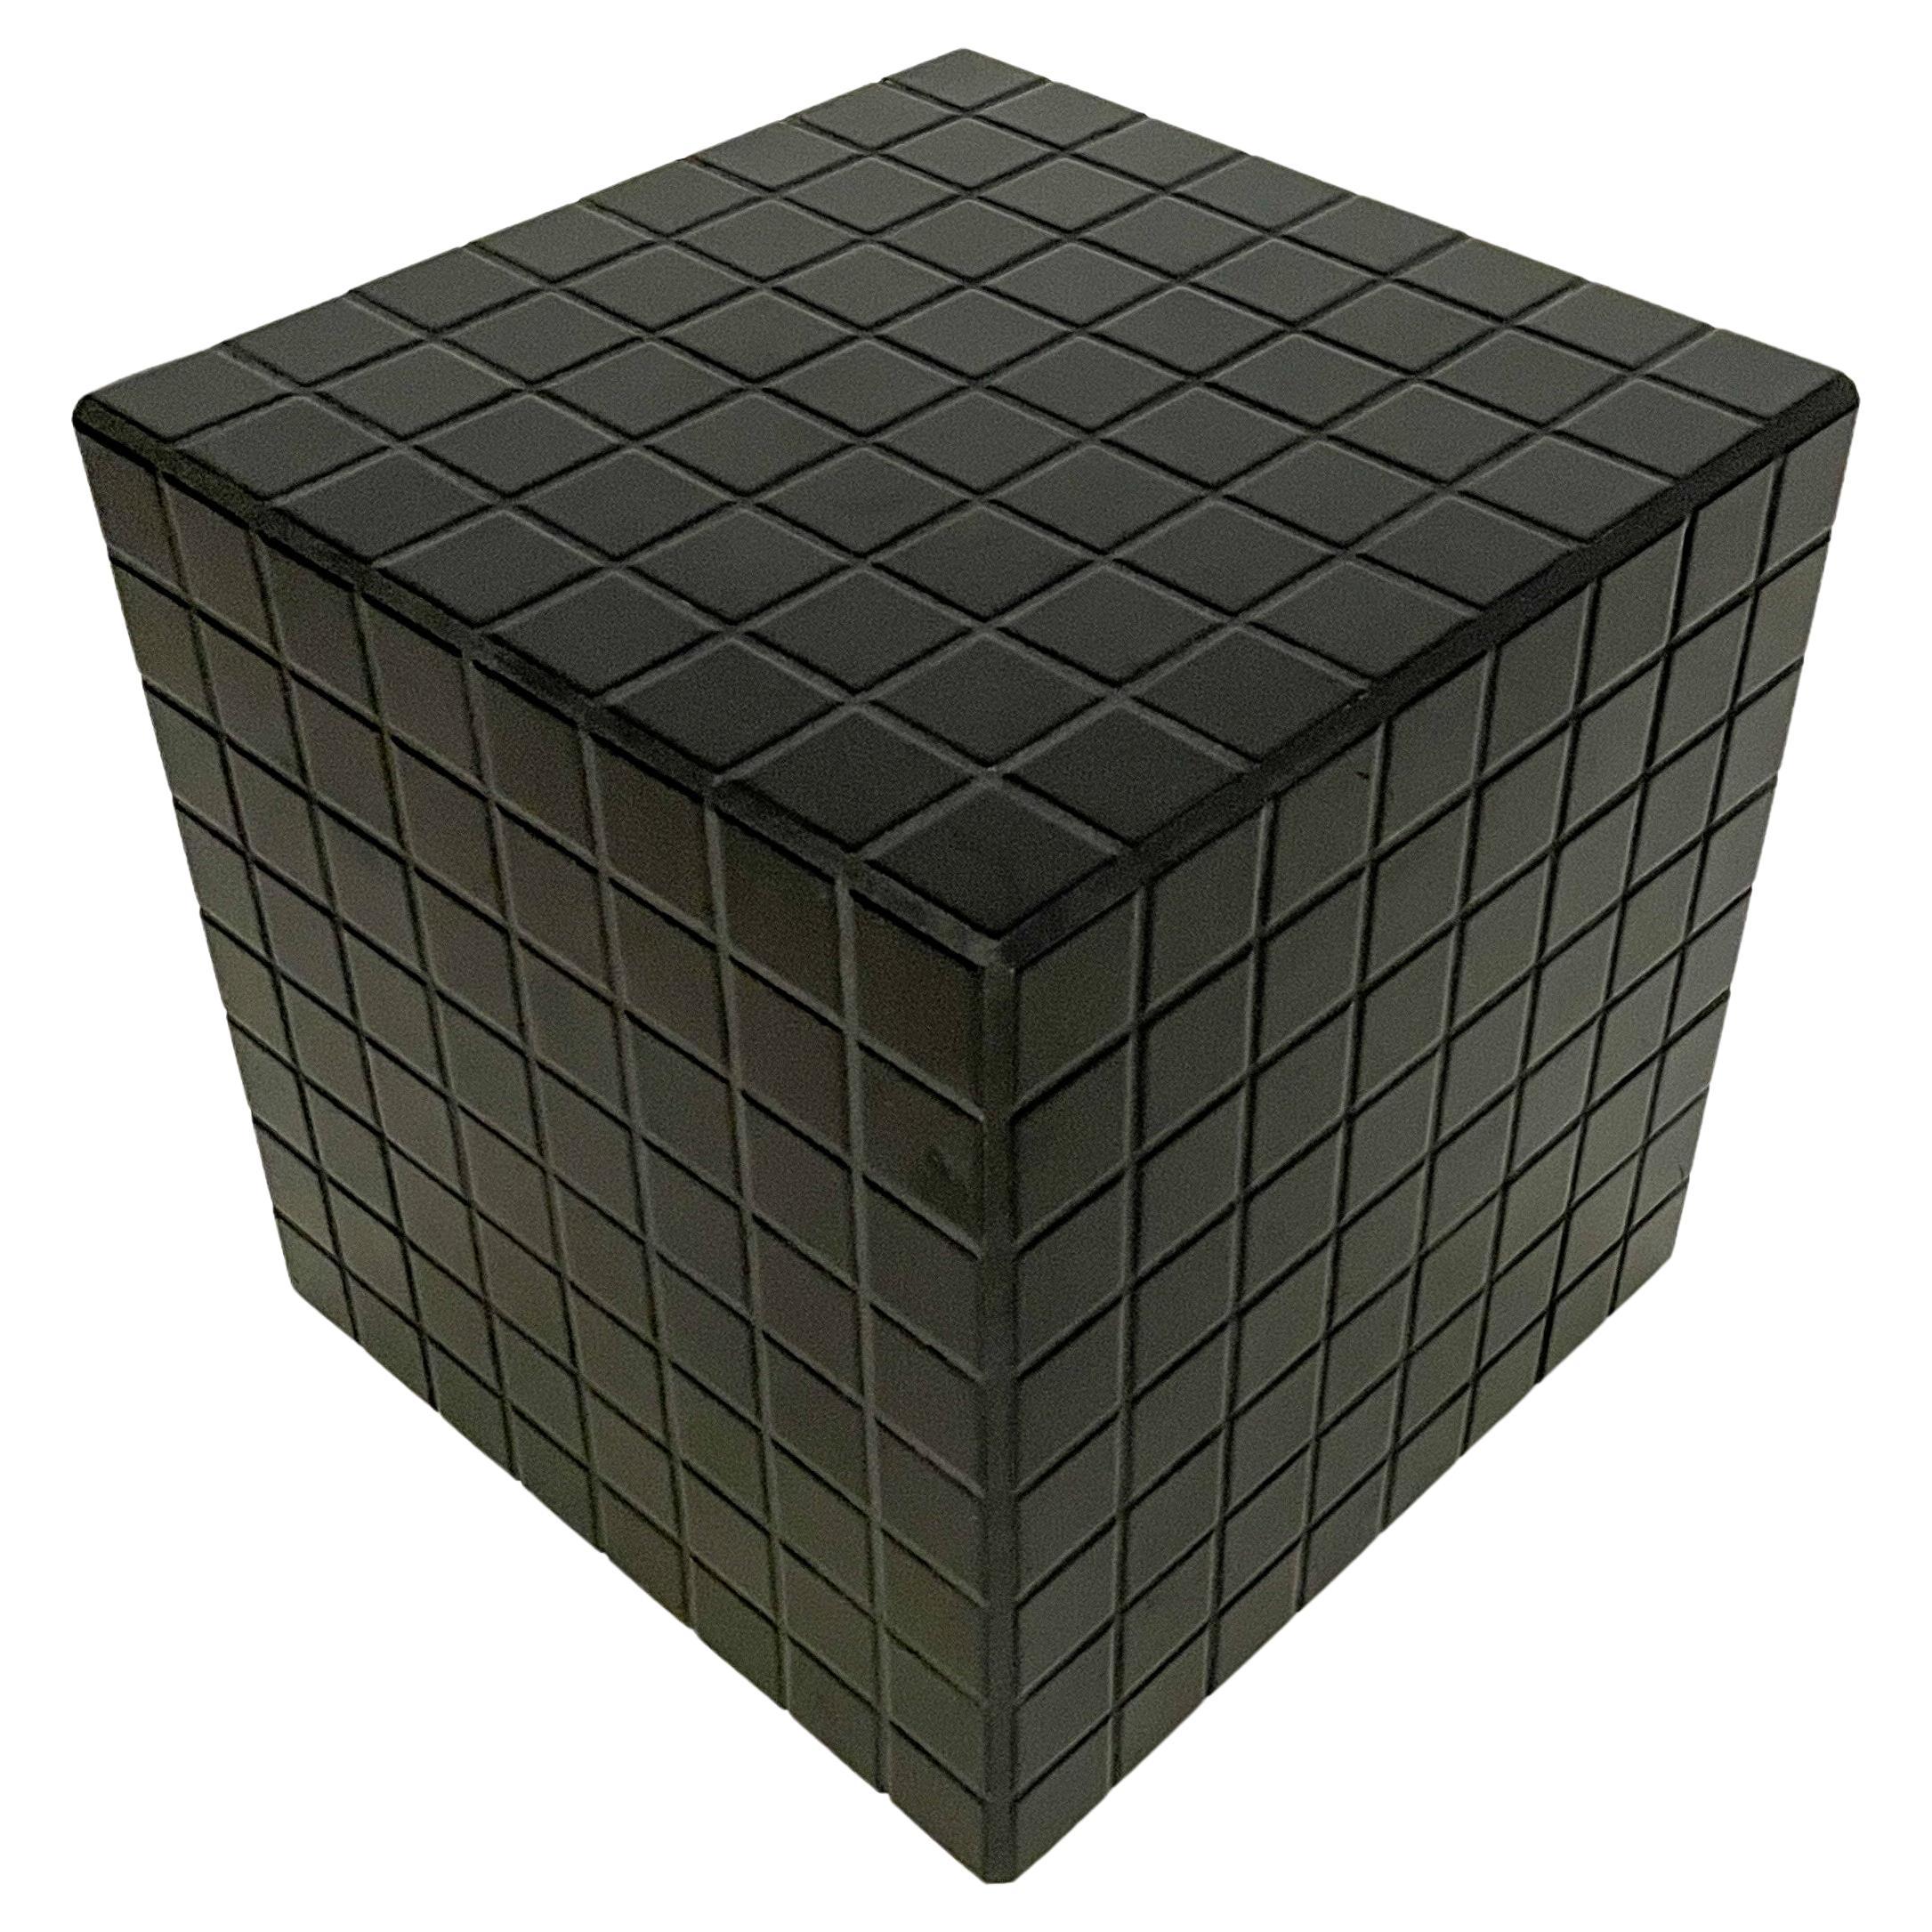 Tile Cube Table by Ikon København